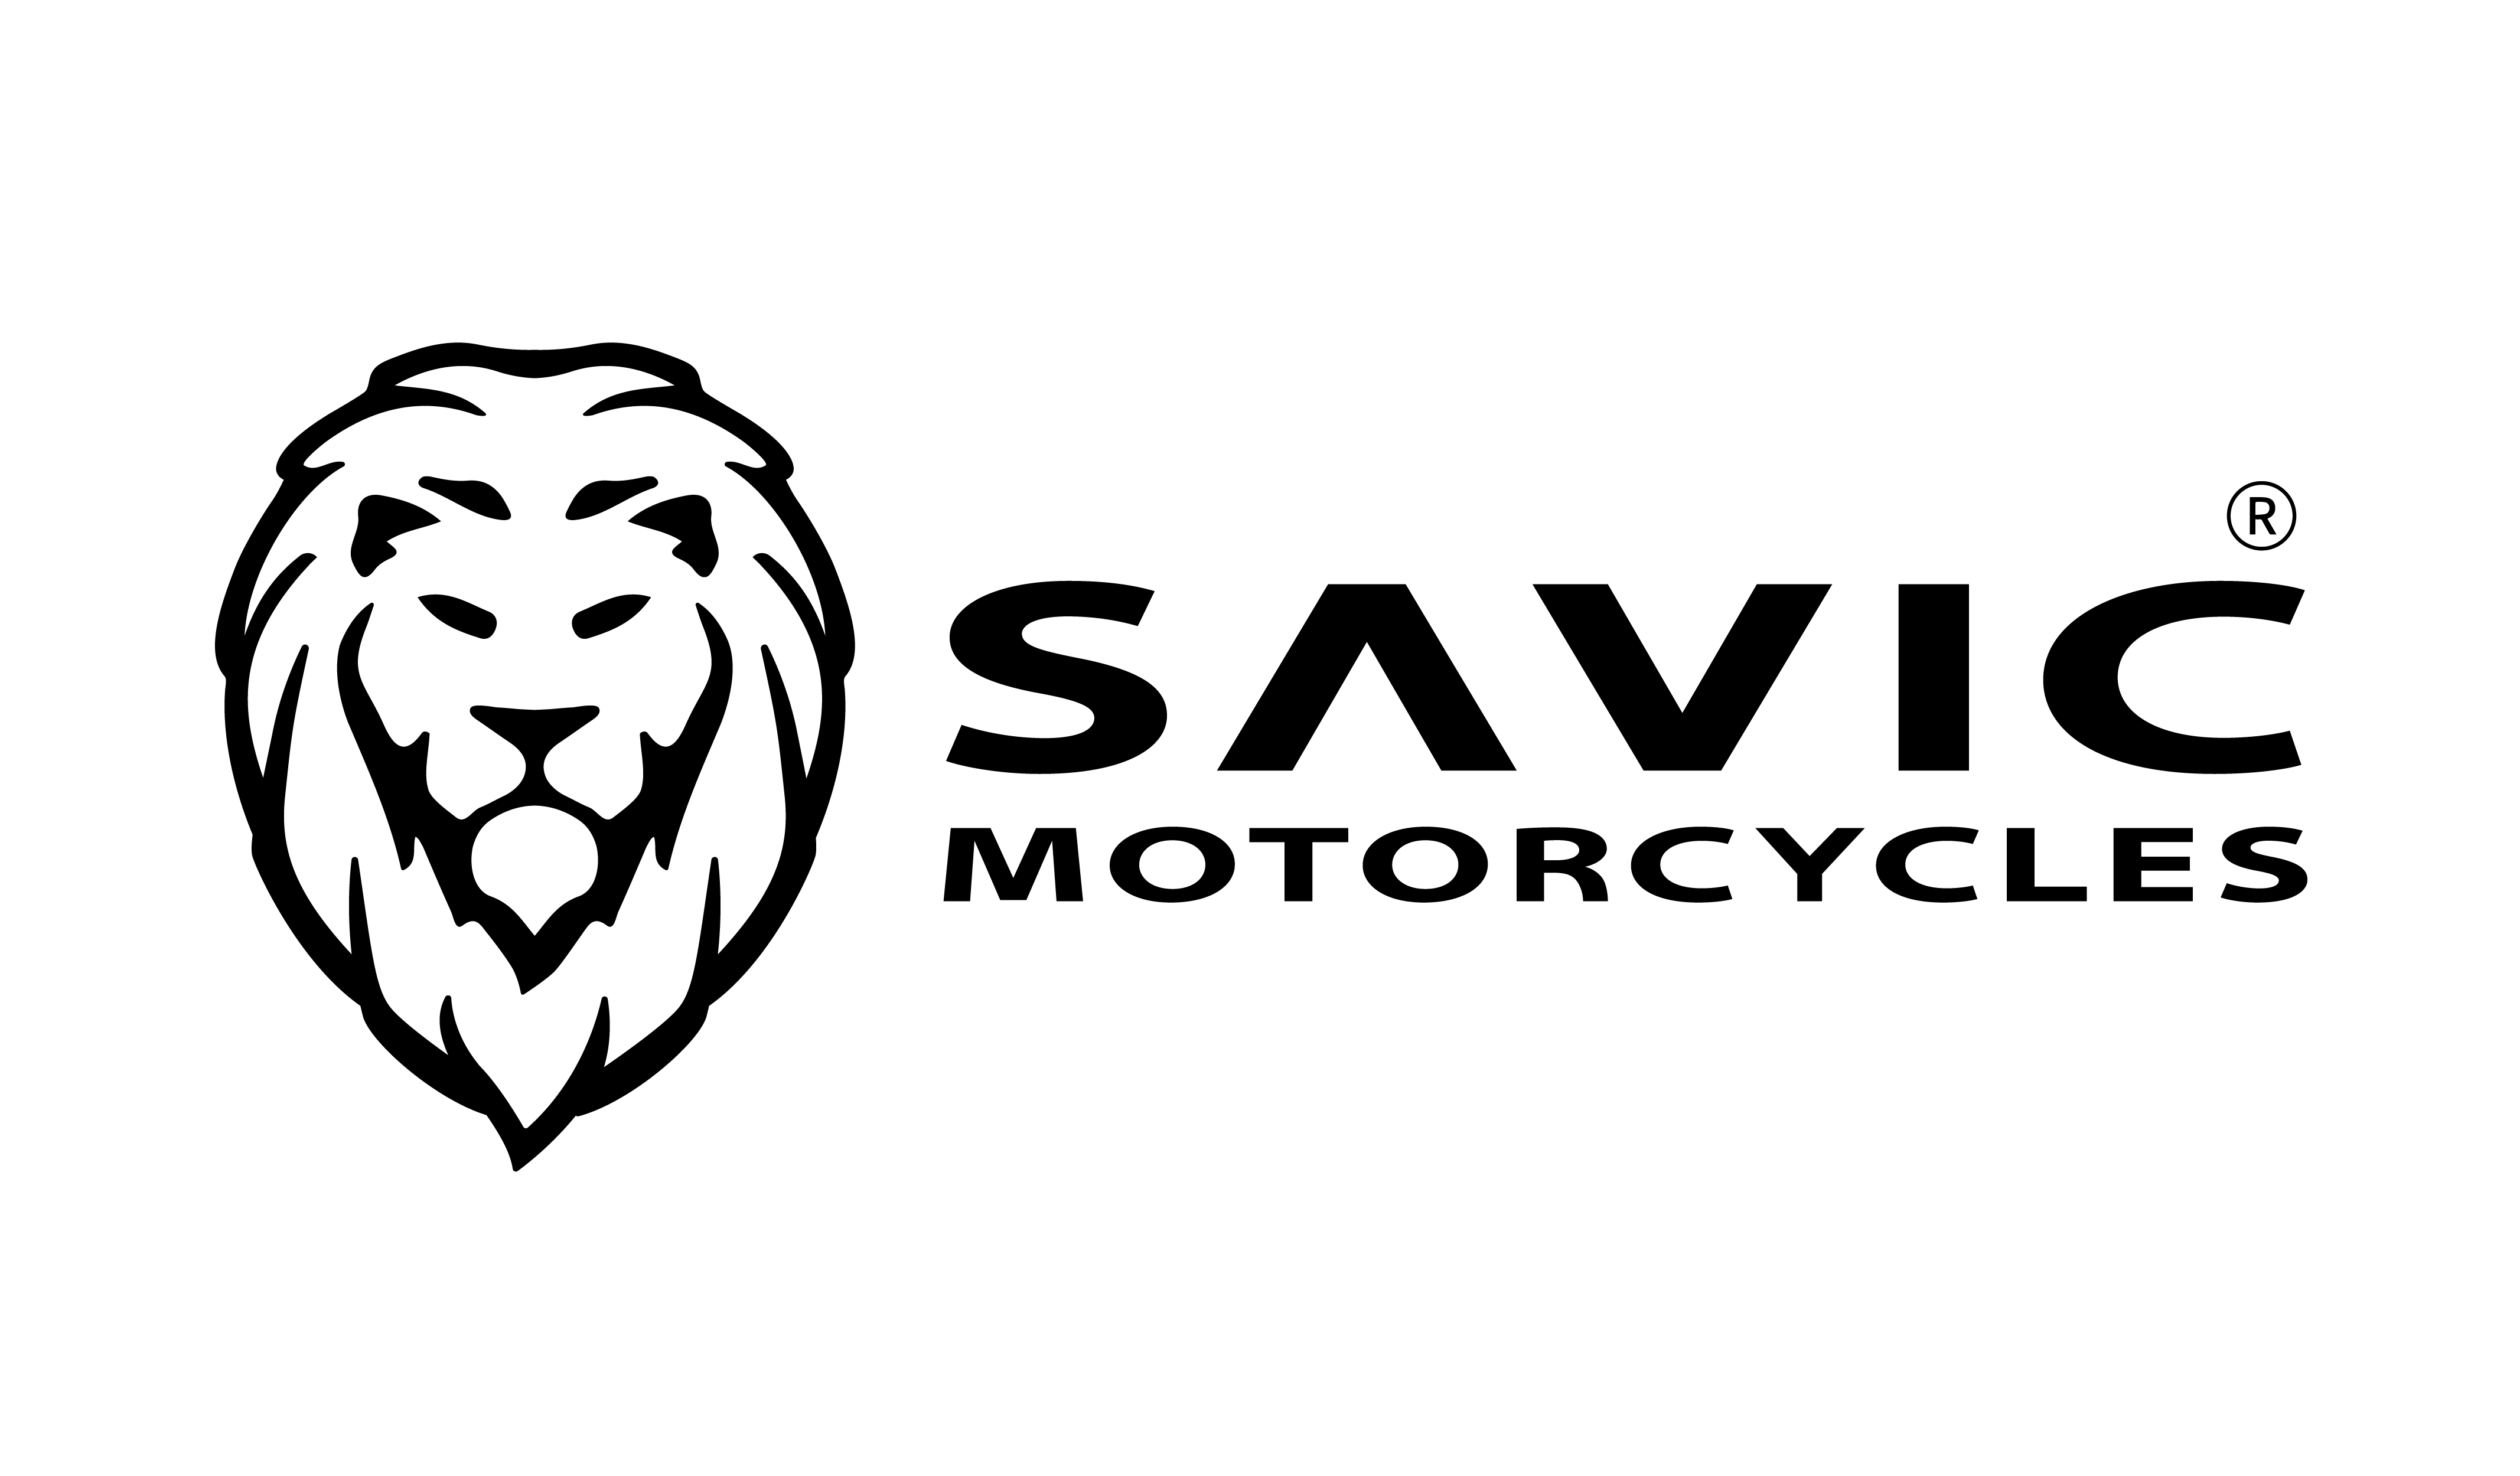 Savic Motorcycles logo black